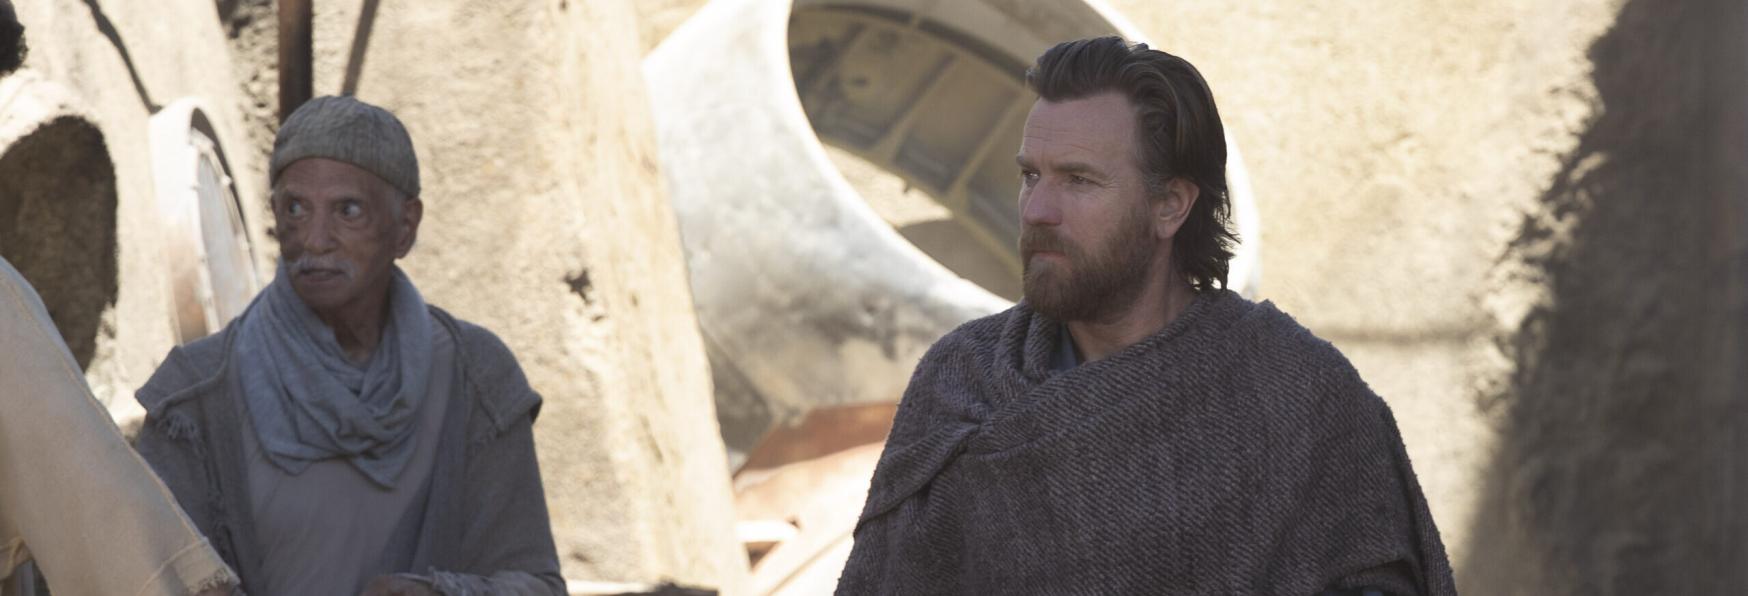 Obi-Wan Kenobi: la Serie TV di Disney+ ottiene un Ottimo Punteggio su Rotten Tomatoes